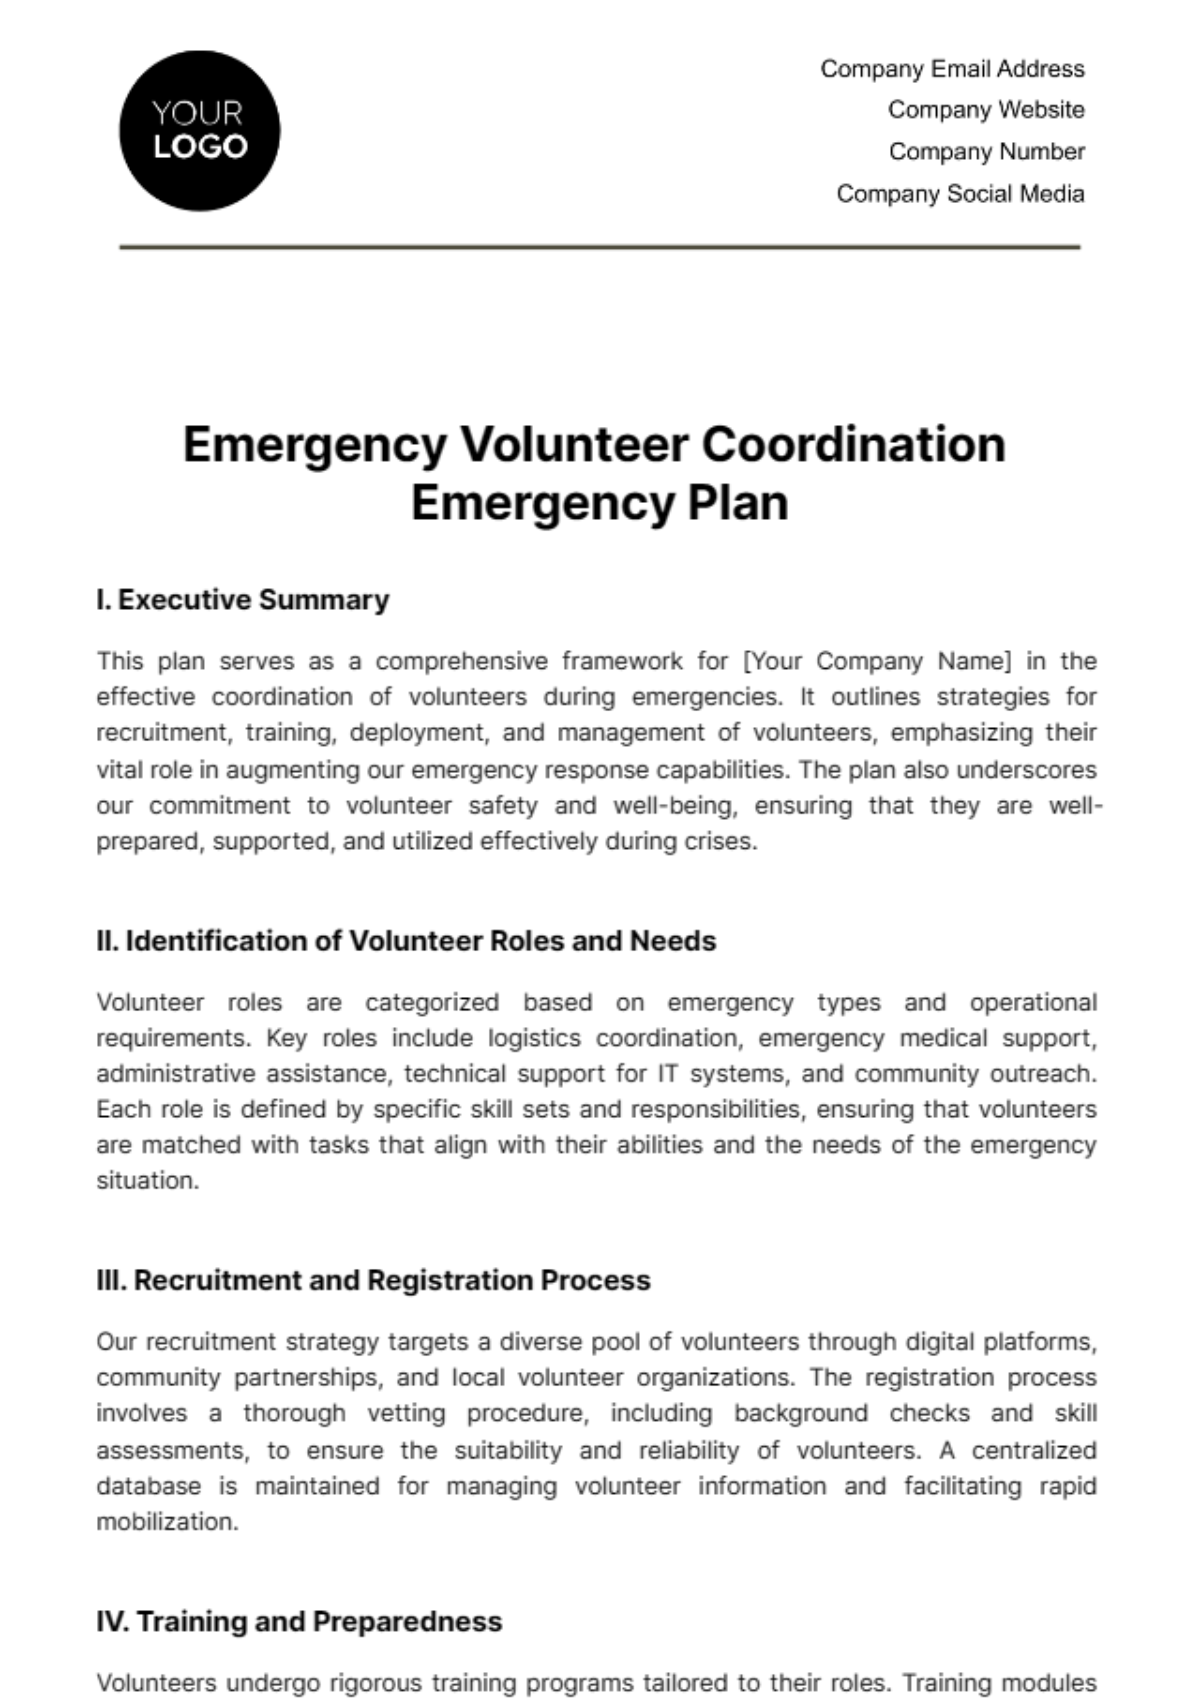 Free Emergency Volunteer Coordination Emergency Plan Template